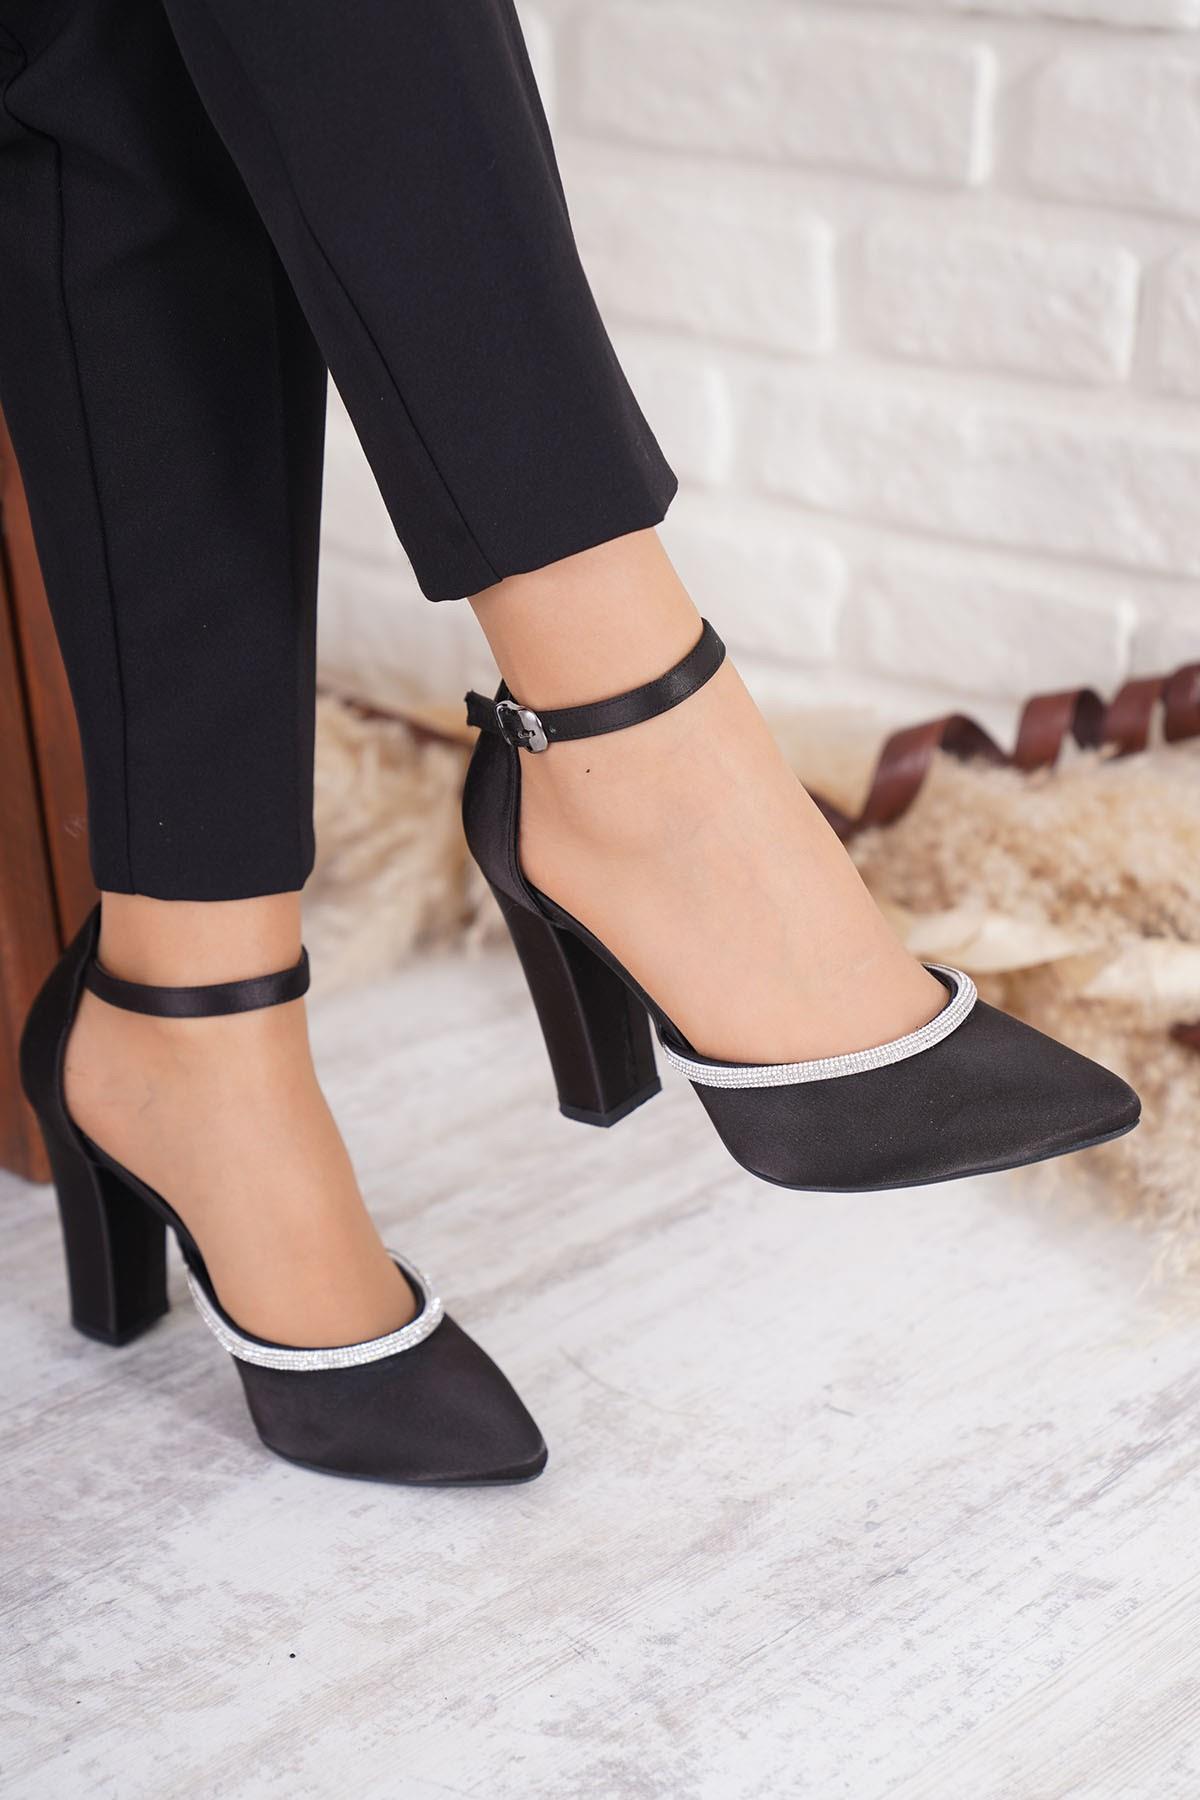 Miu Şerit Taş Karnıyarık Kadın Topuklu Ayakkabı Siyah Saten